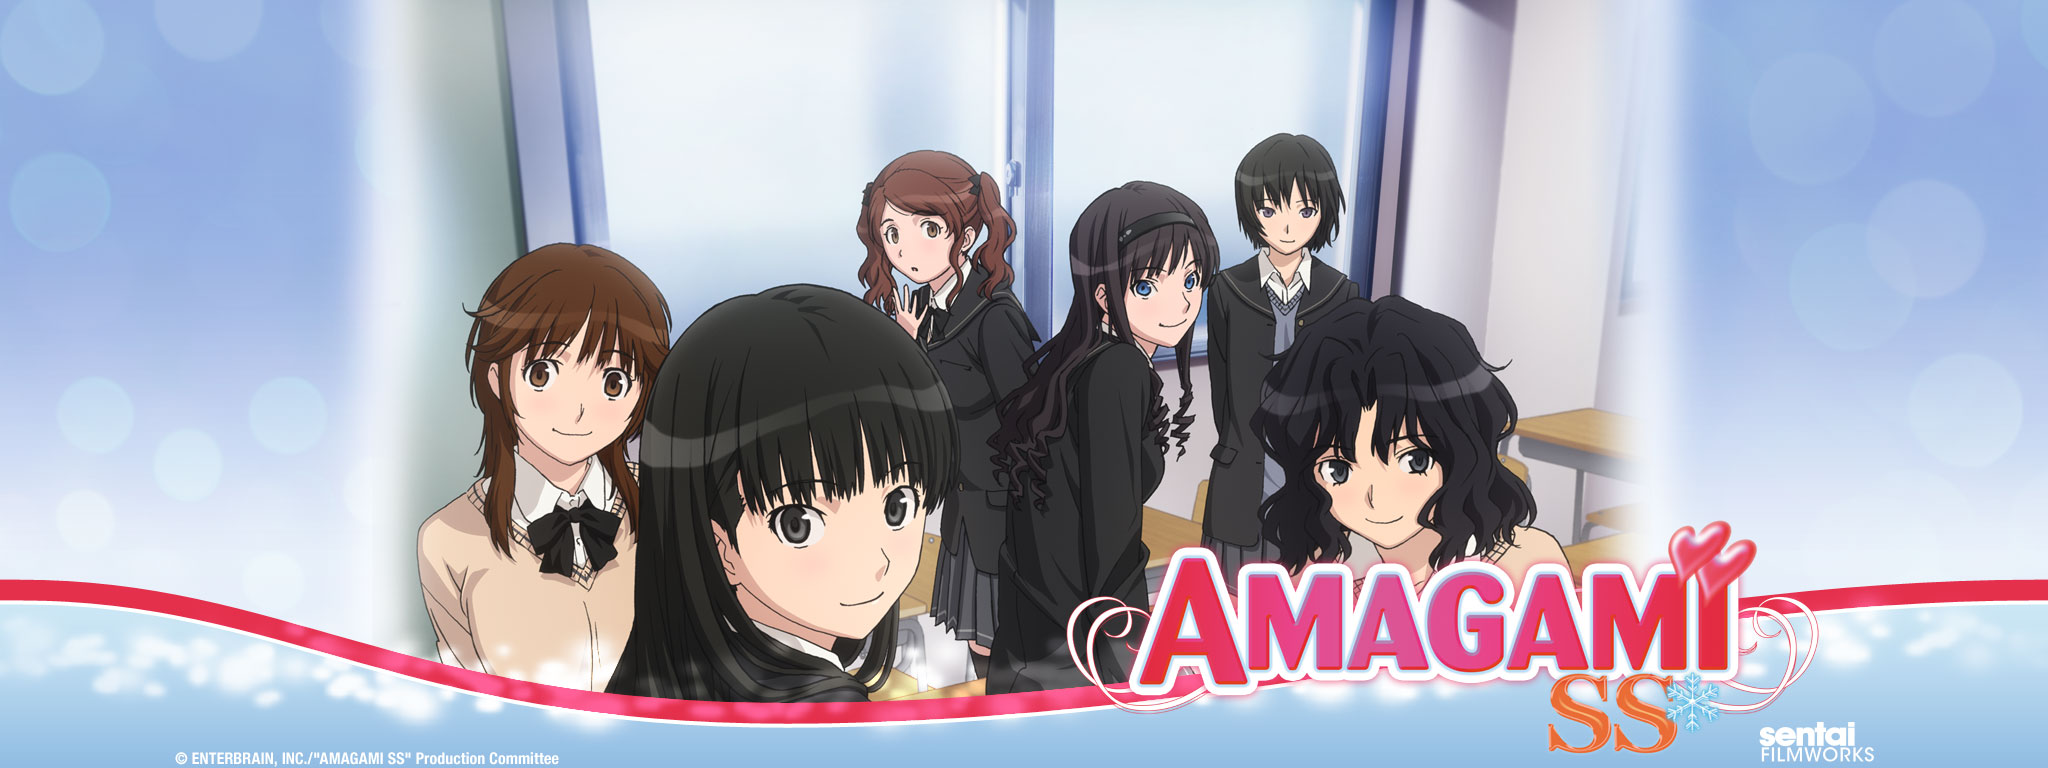 Amagami ss visual novel